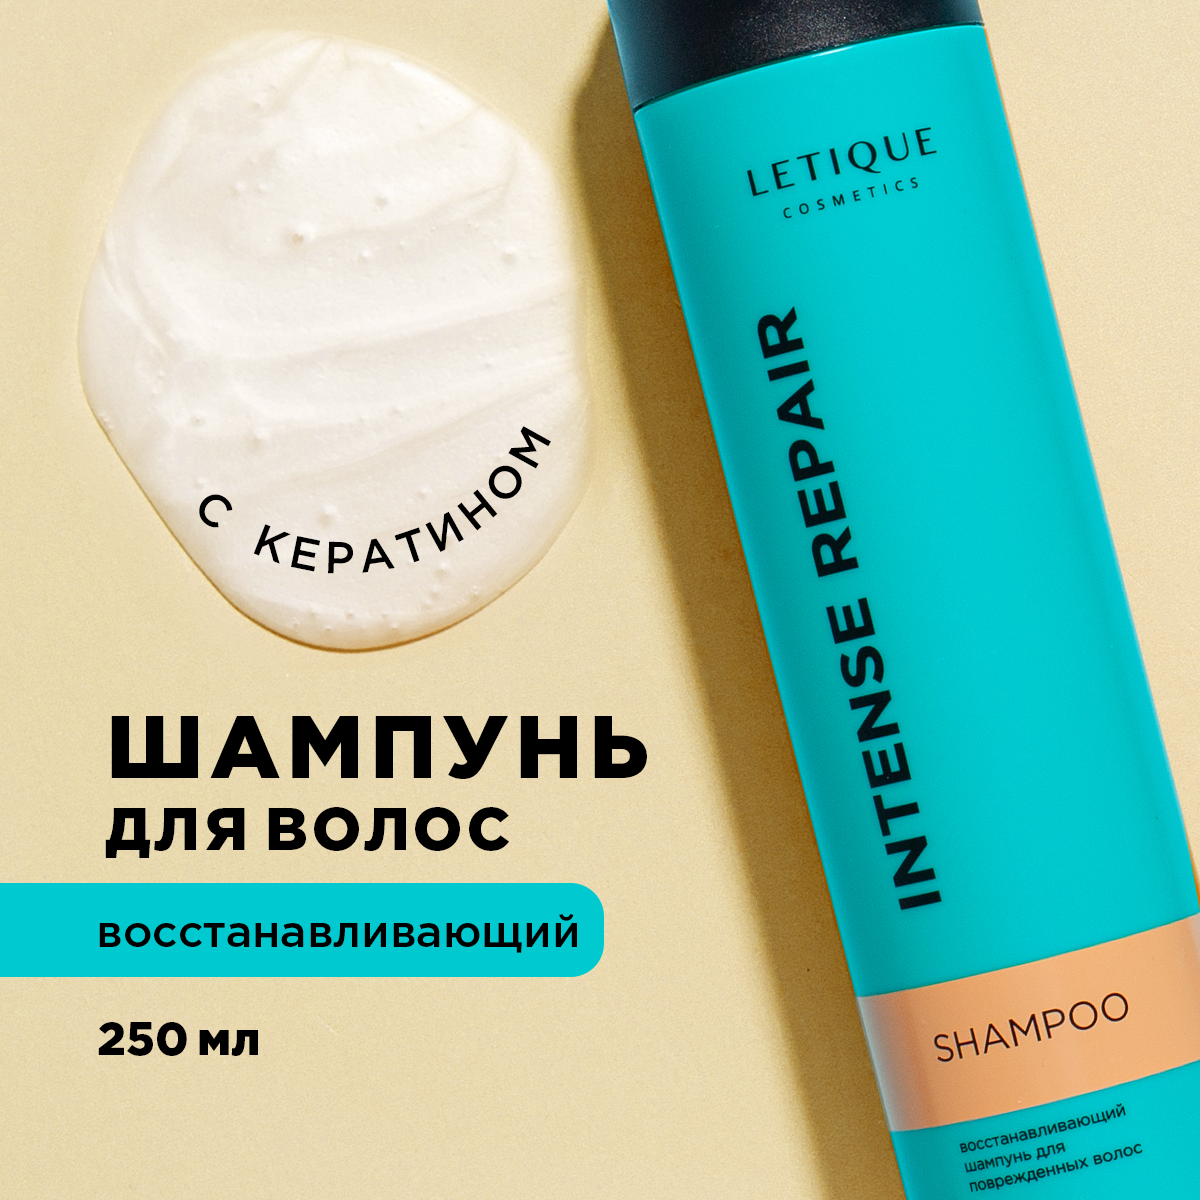 Восстанавливающий шампунь для поврежденных волос Letique Cosmetics 250 мл